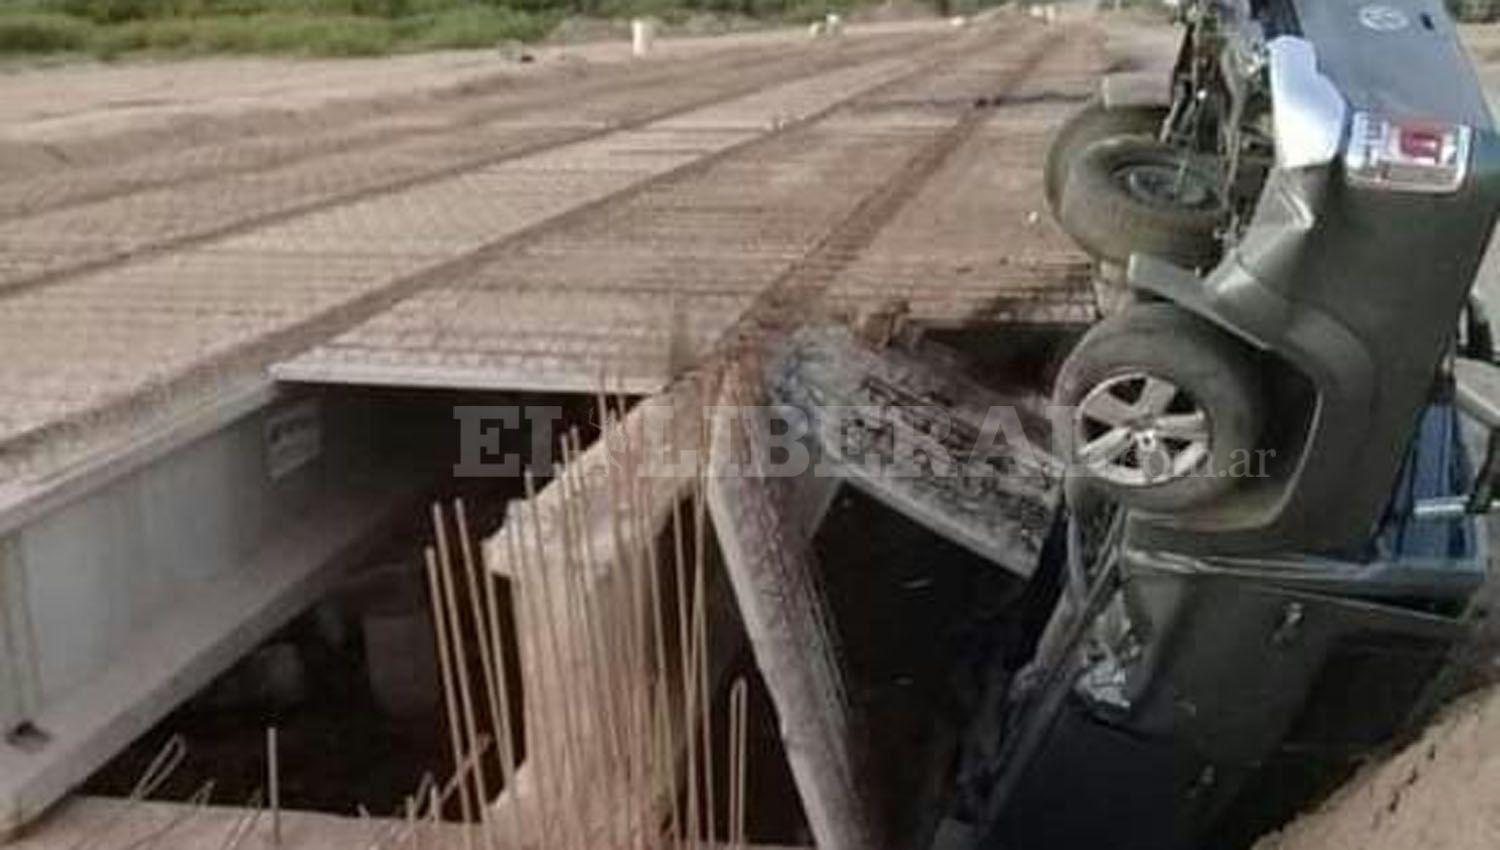 Conductor cordobeacutes se salvoacute de milagro tras volcar y caer en un puente en construccioacuten